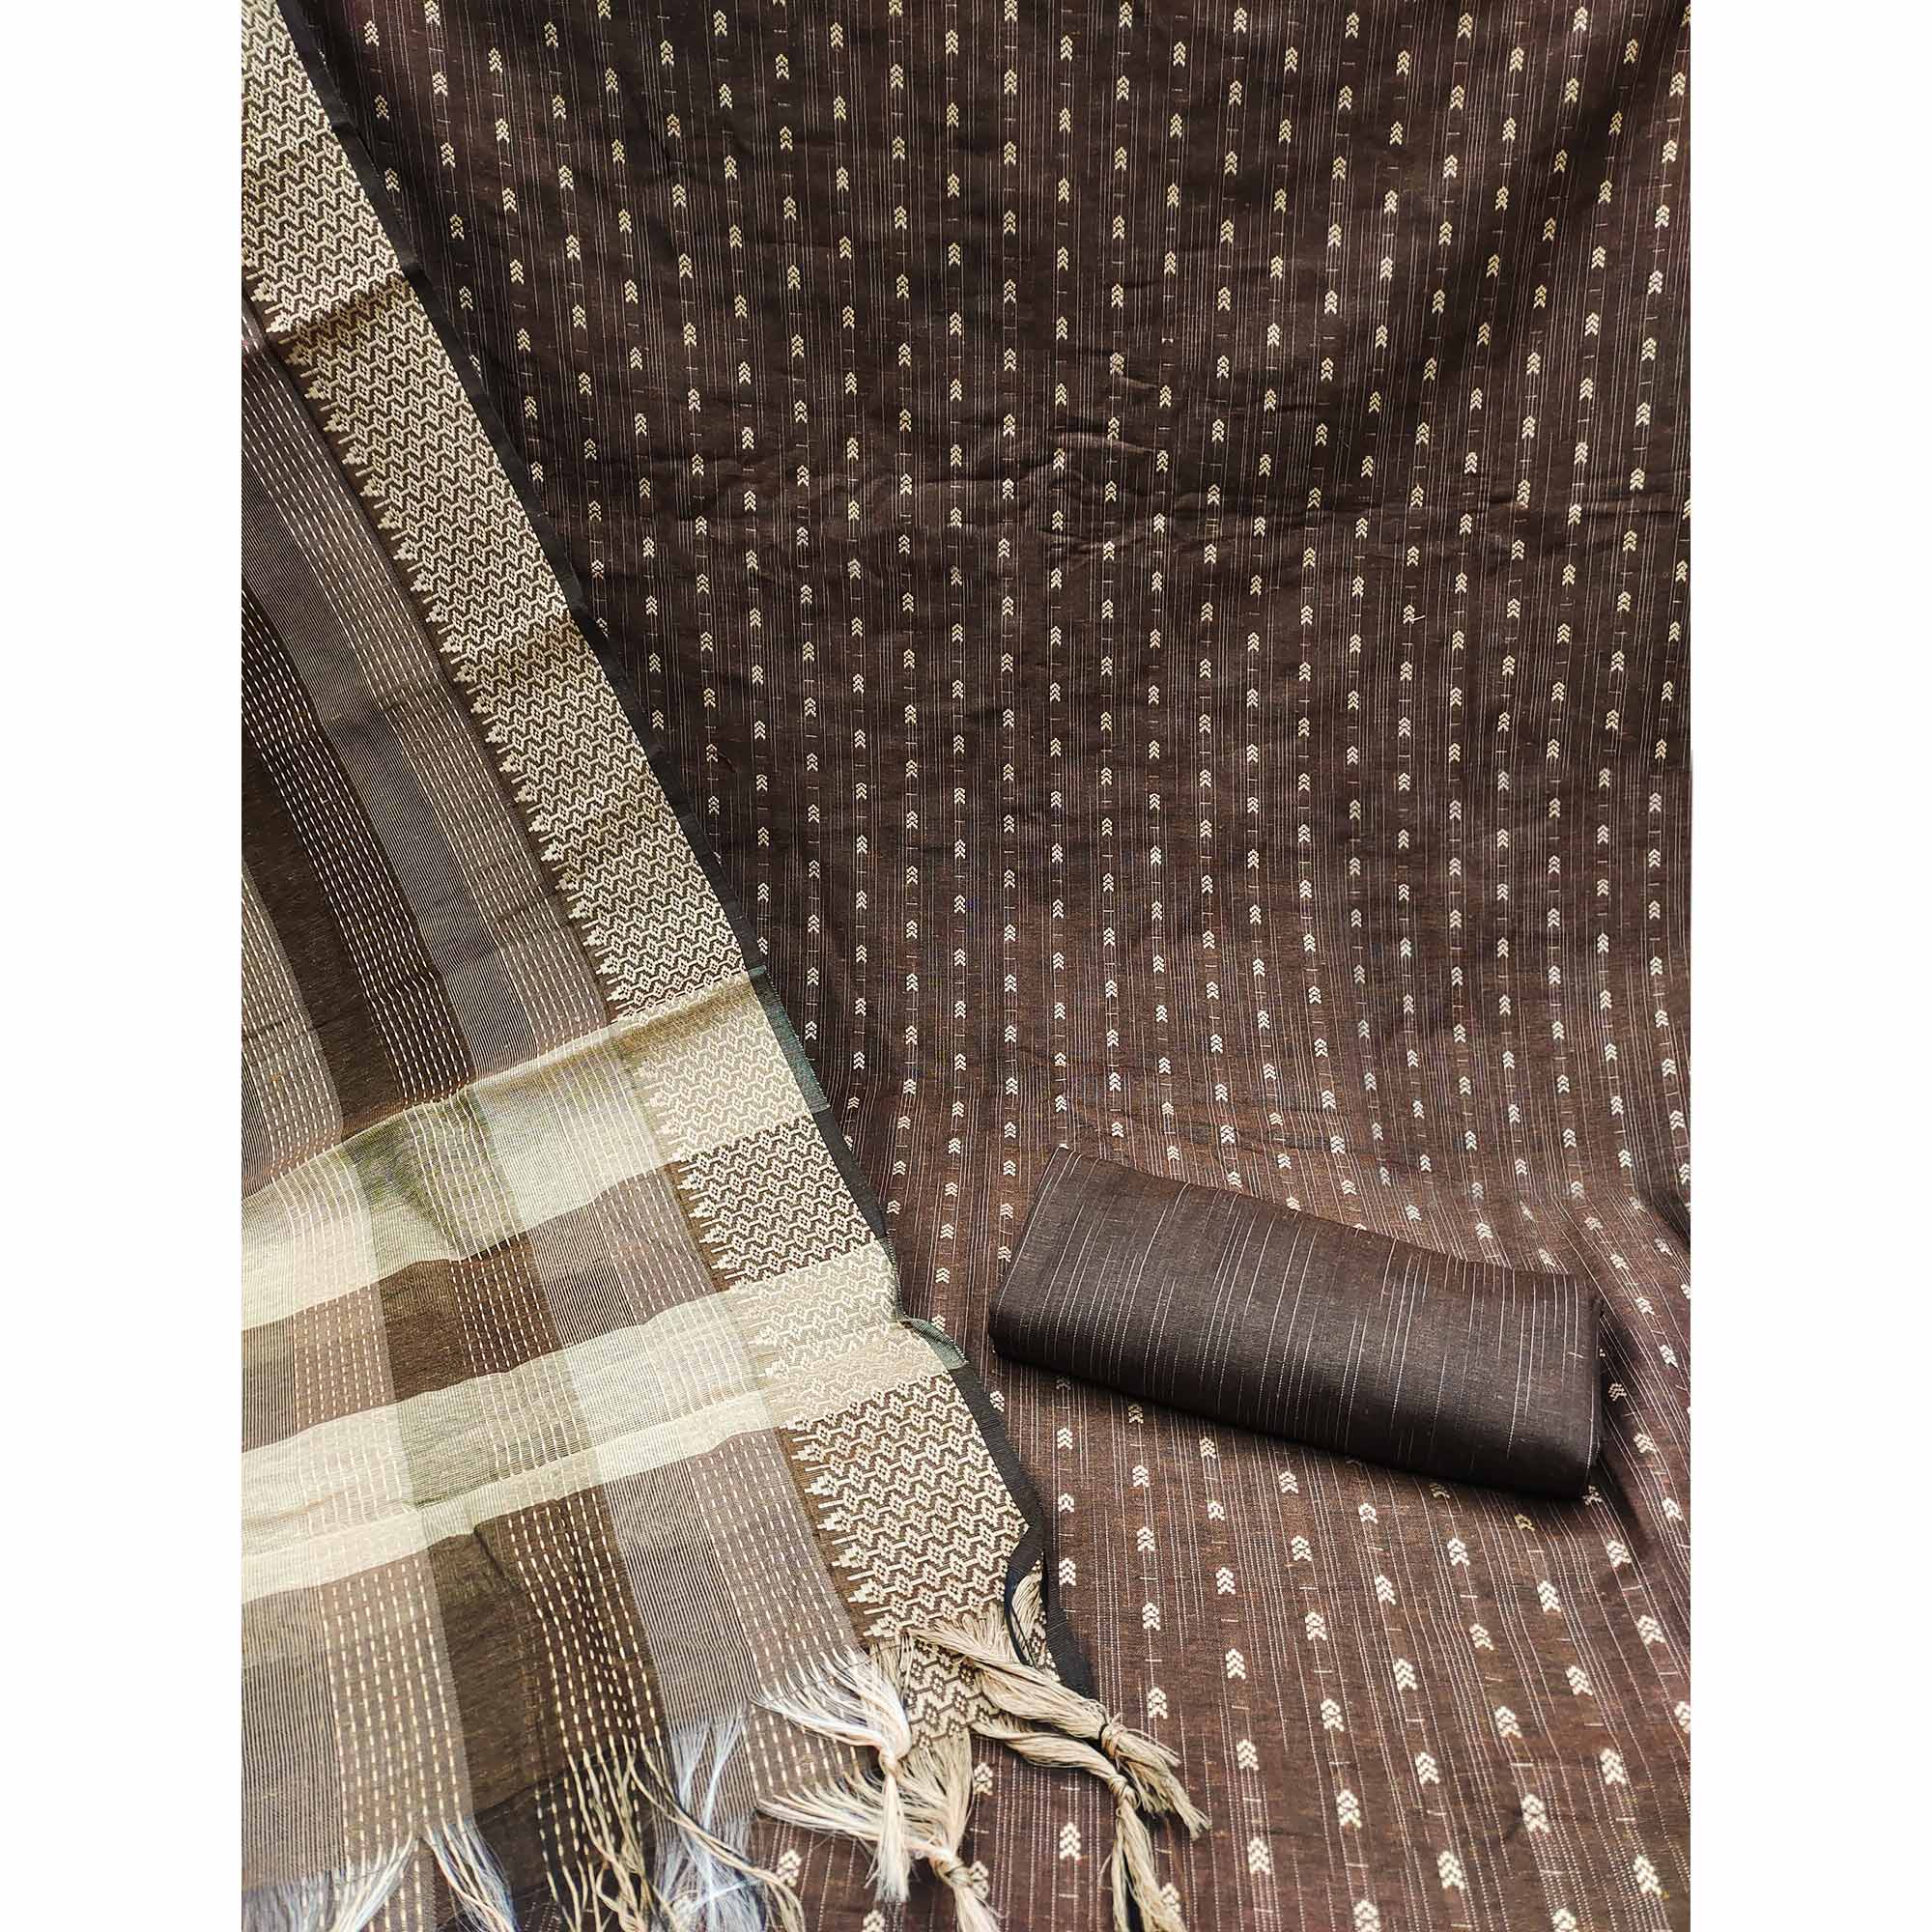 Brown Woven Cotton Blend Dress Material